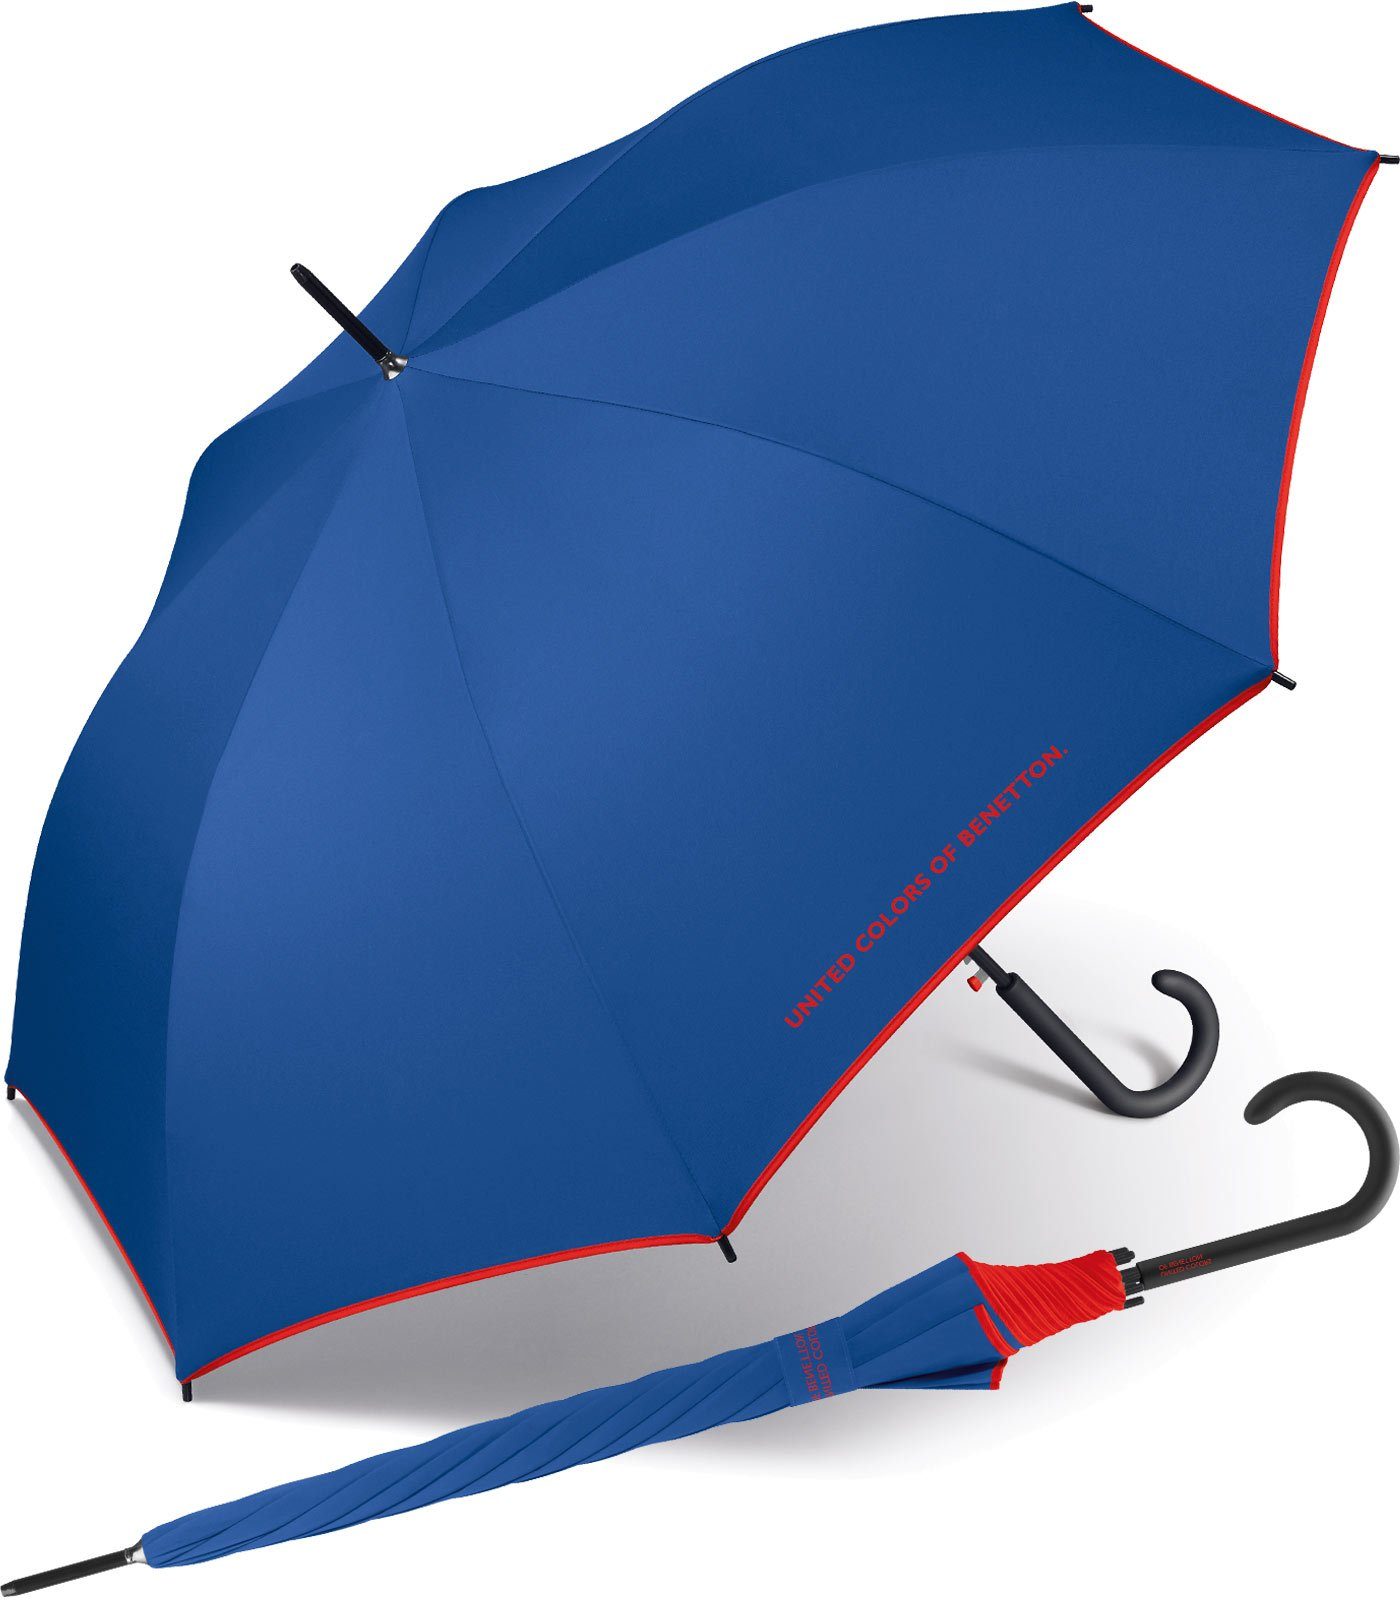 United Colors of Benetton Langregenschirm großer Regenschirm mit Auf-Automatik und Logo, einfarbig mit Kontrastfarben am Schirmrand blau